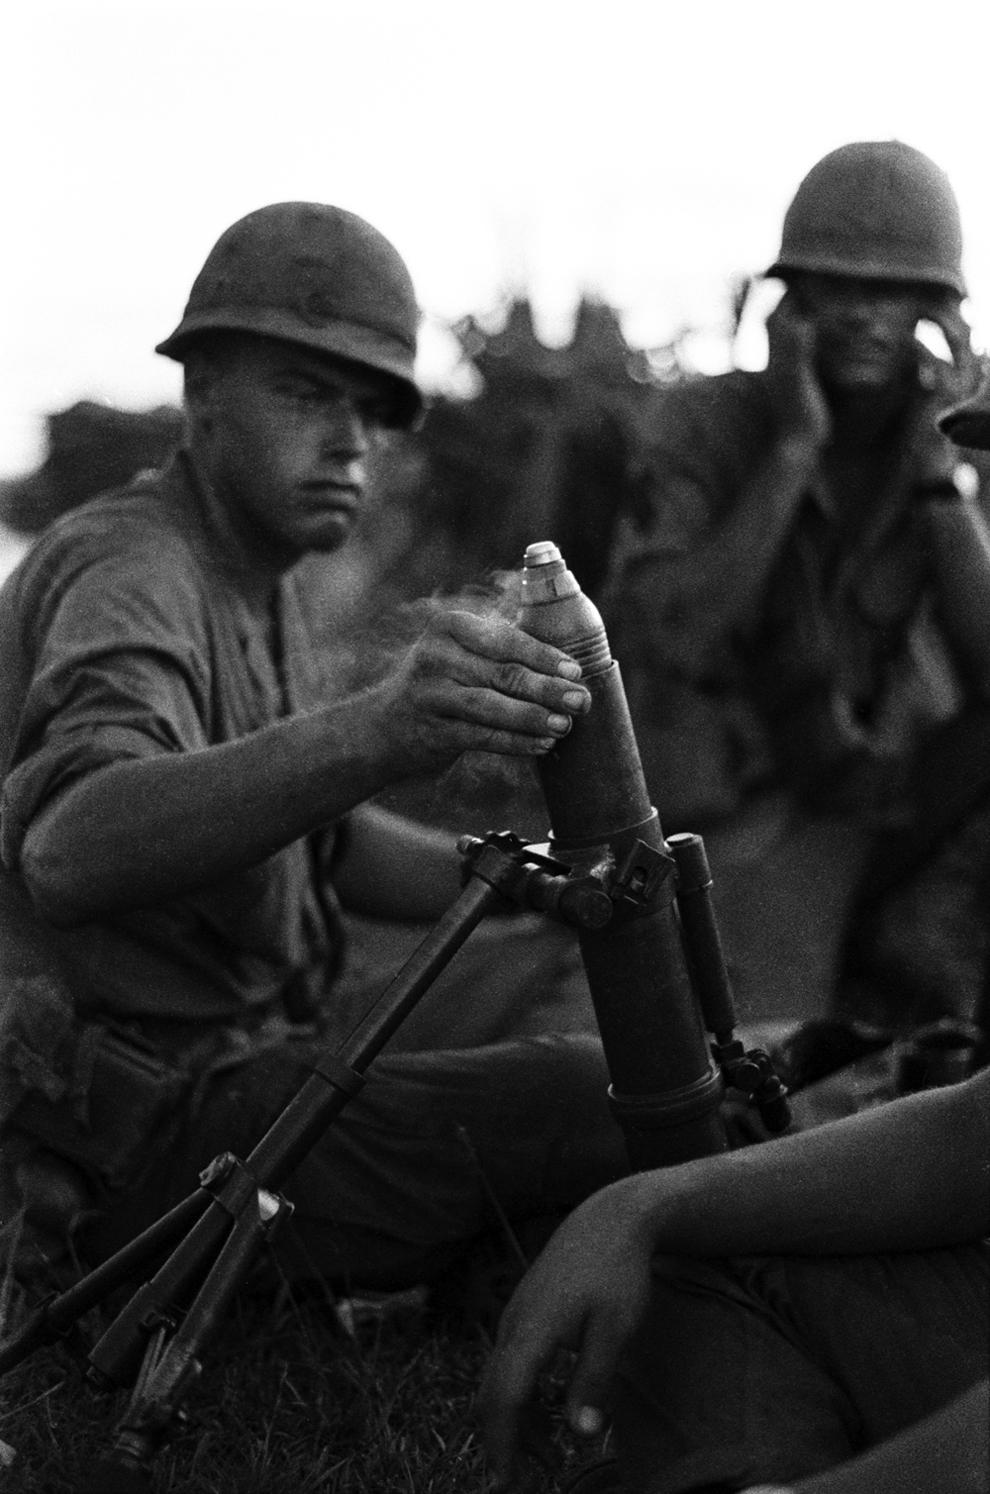 bp10 - Hình ảnh hiếm gây chấn động về cuộc chiến ở Việt Nam